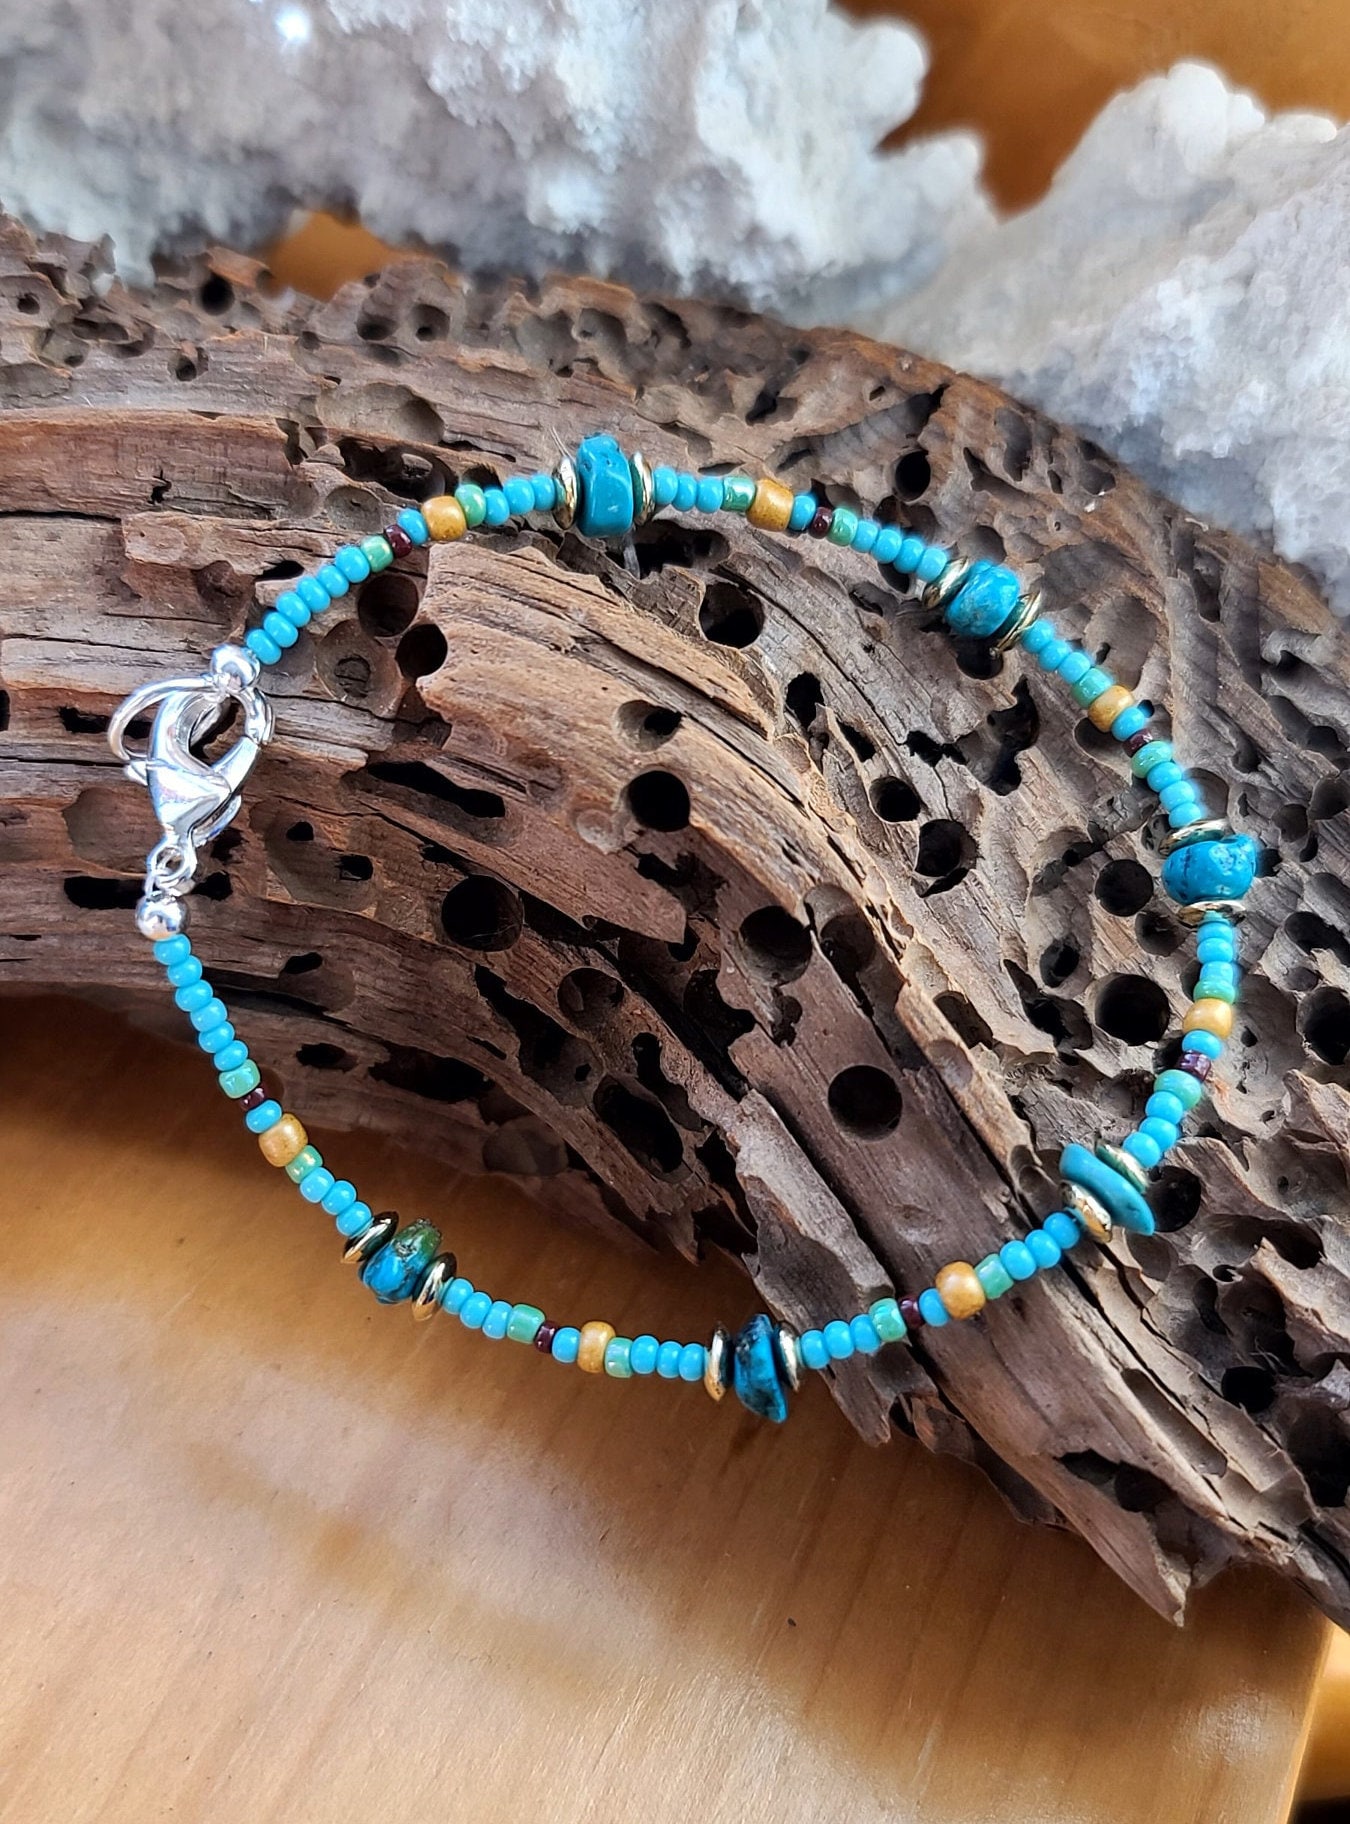 Beaded Bracelet. Bohemian Loom Bracelet. American Indian. Seed Beads. Loom Bracelet Arrow Motifs. Beige, Blue, Bronze